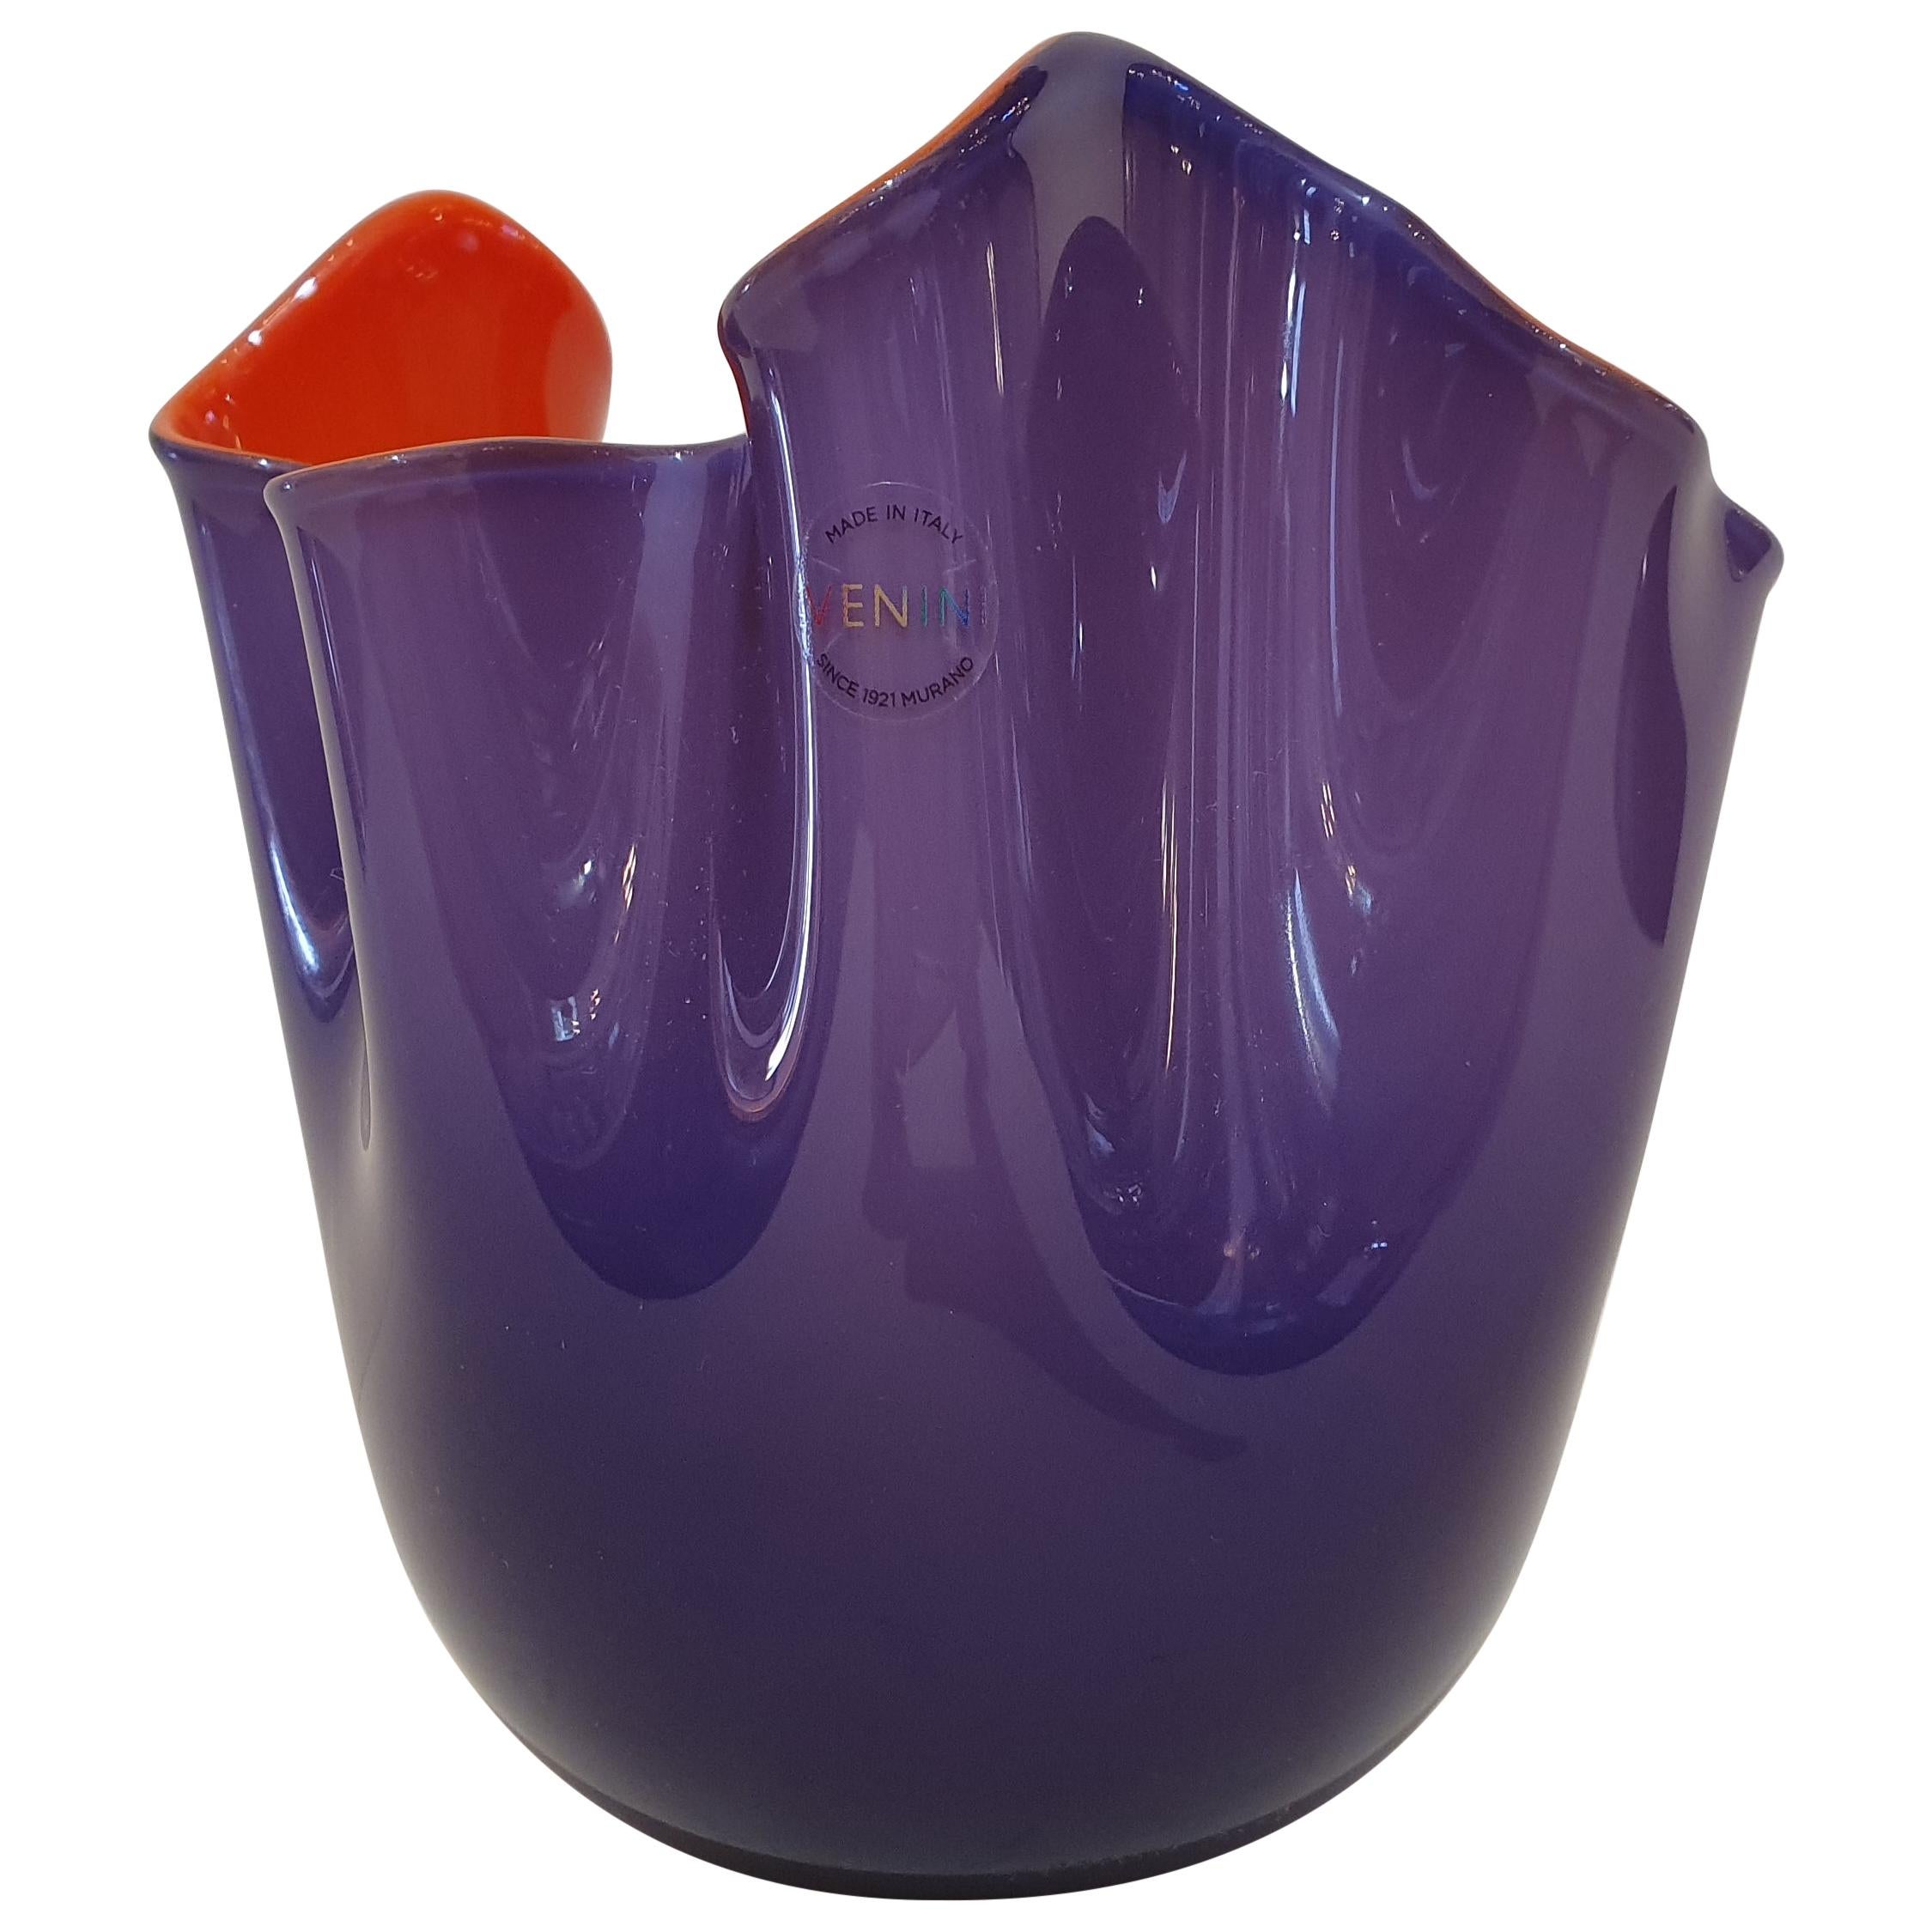 Venini Fulvio Bianconi Murano Blown Glass "Fazzoletto" Small Vase, Italy, 2019